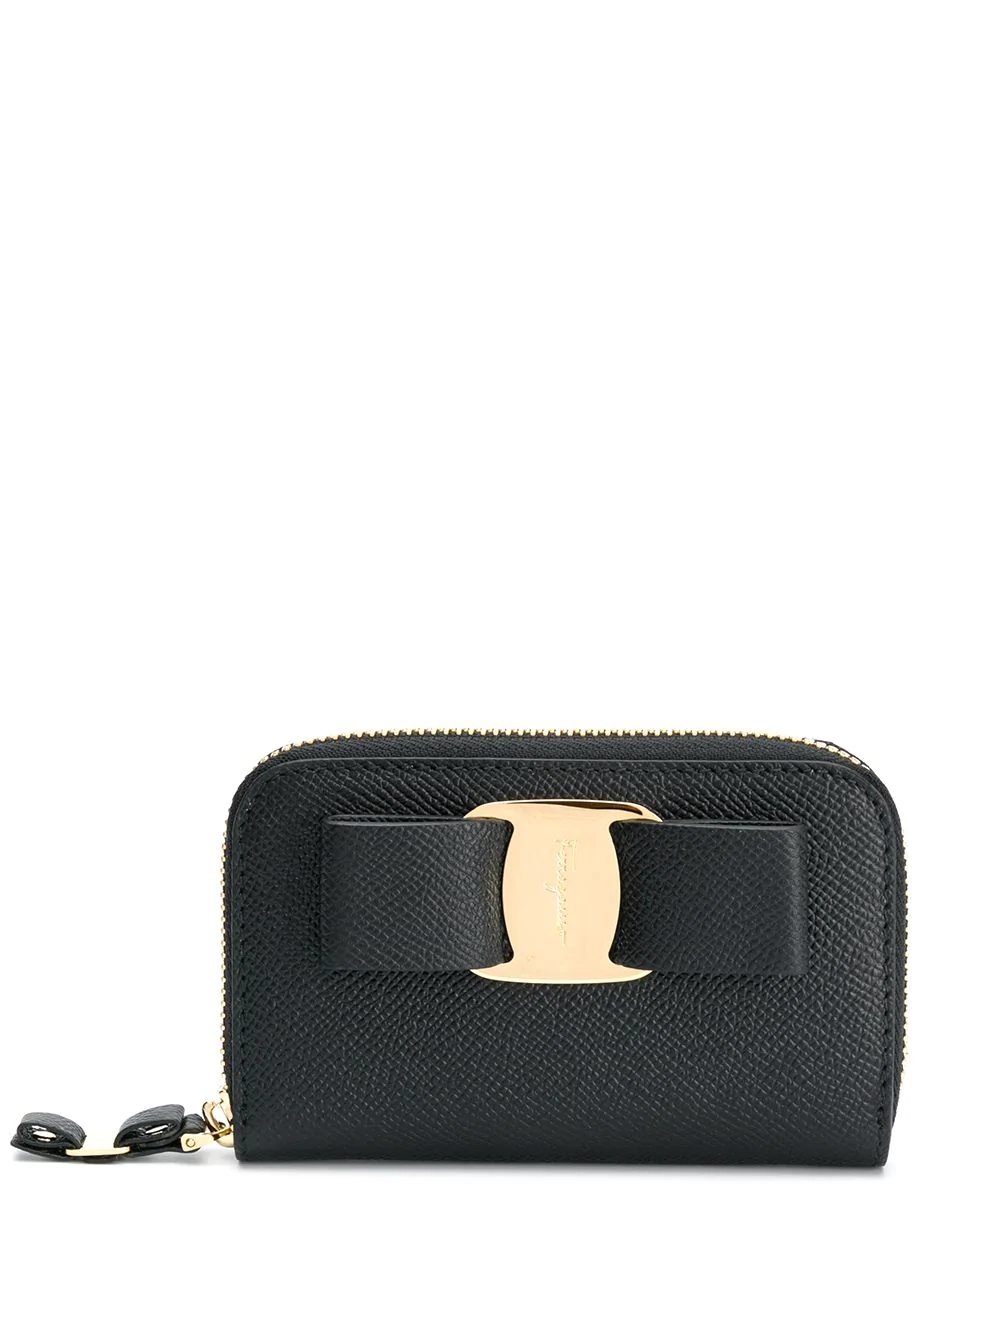 bow detail purse - 1